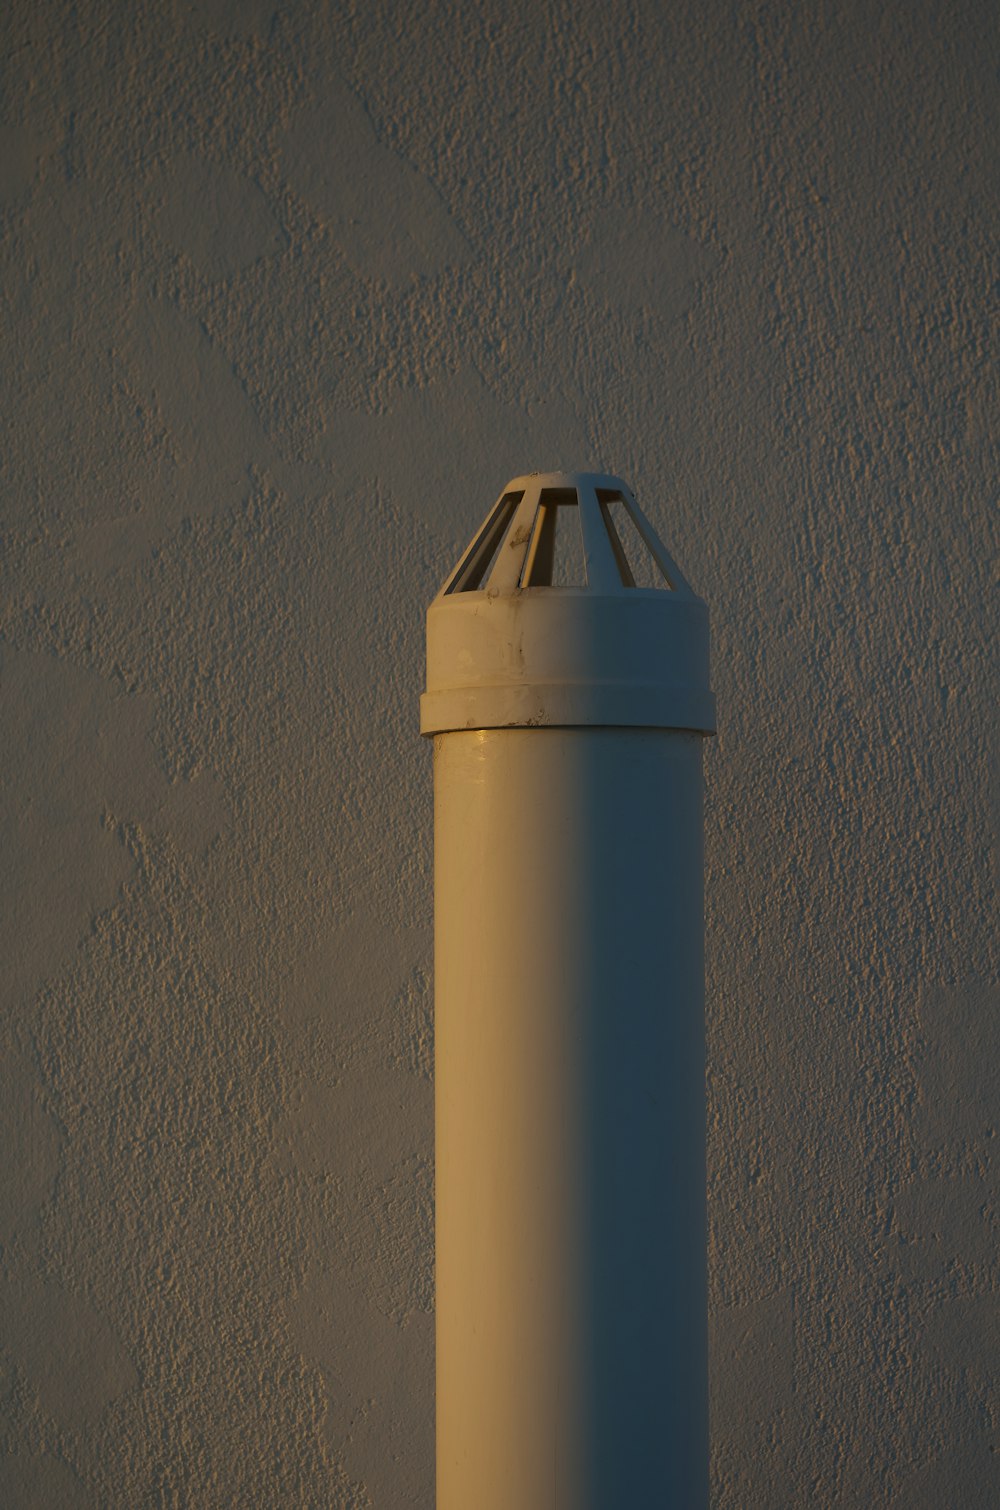 a tall white pole against a white wall